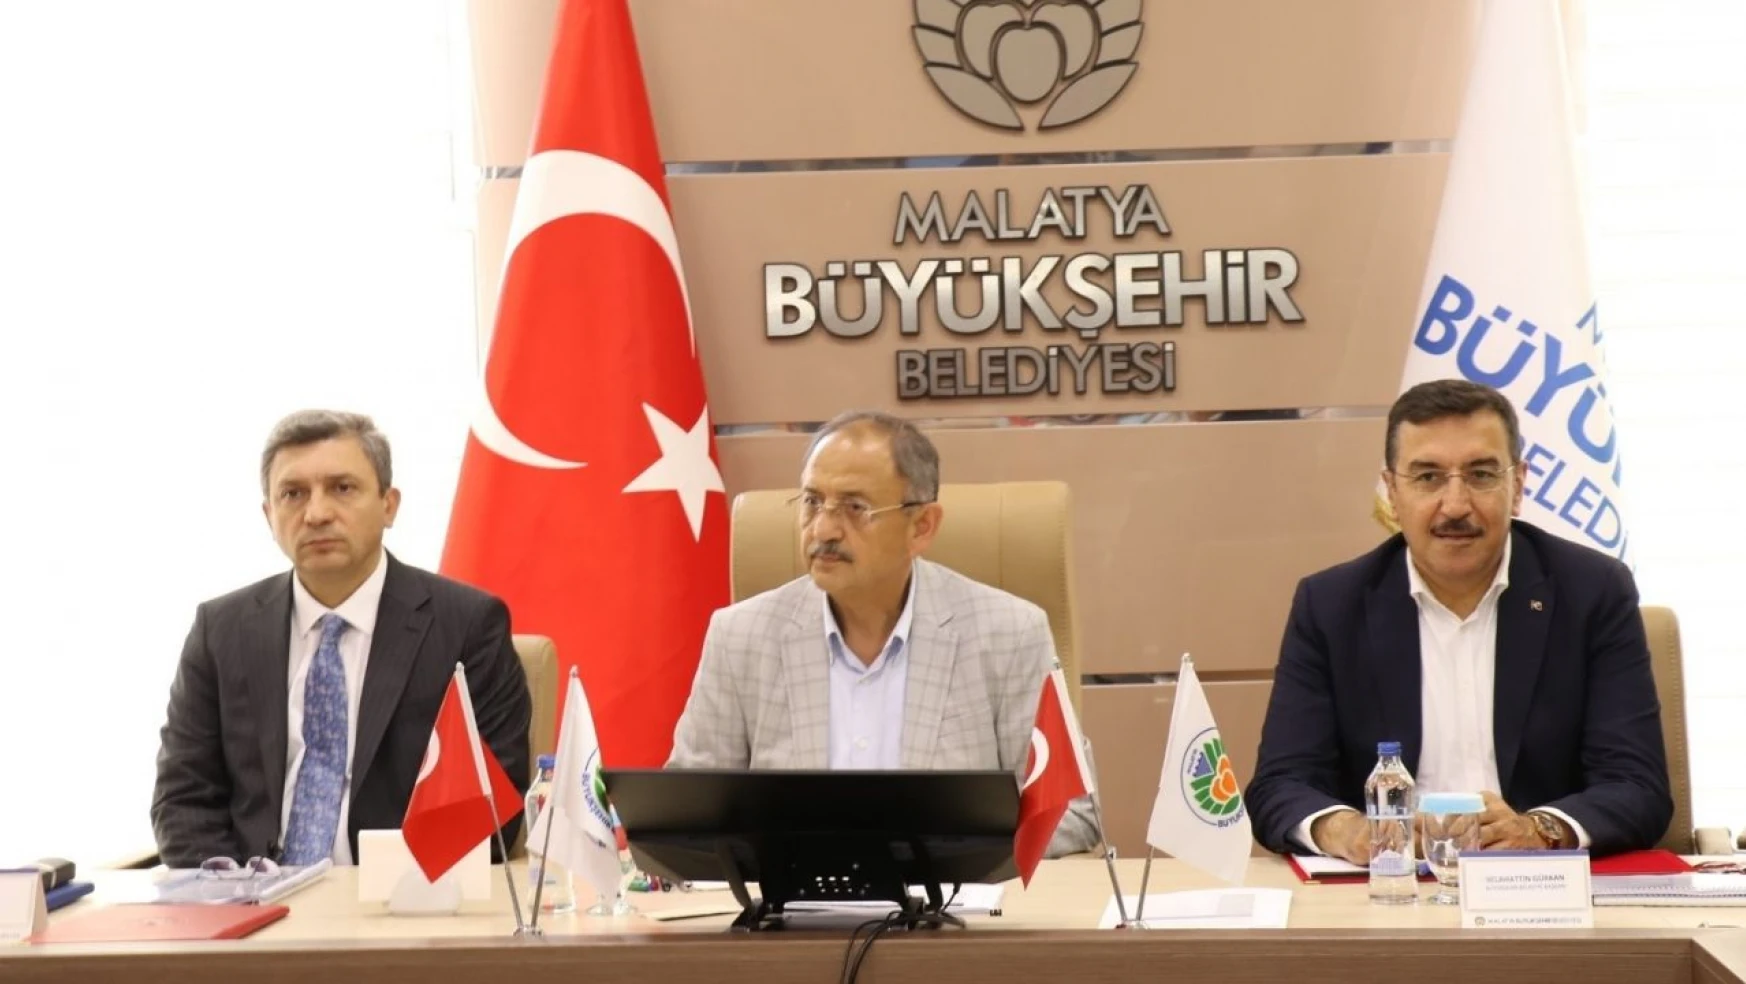 Bakan Özhaseki Malatya'da konuştu: 'Yönetmeliklerde sert davranacağız'